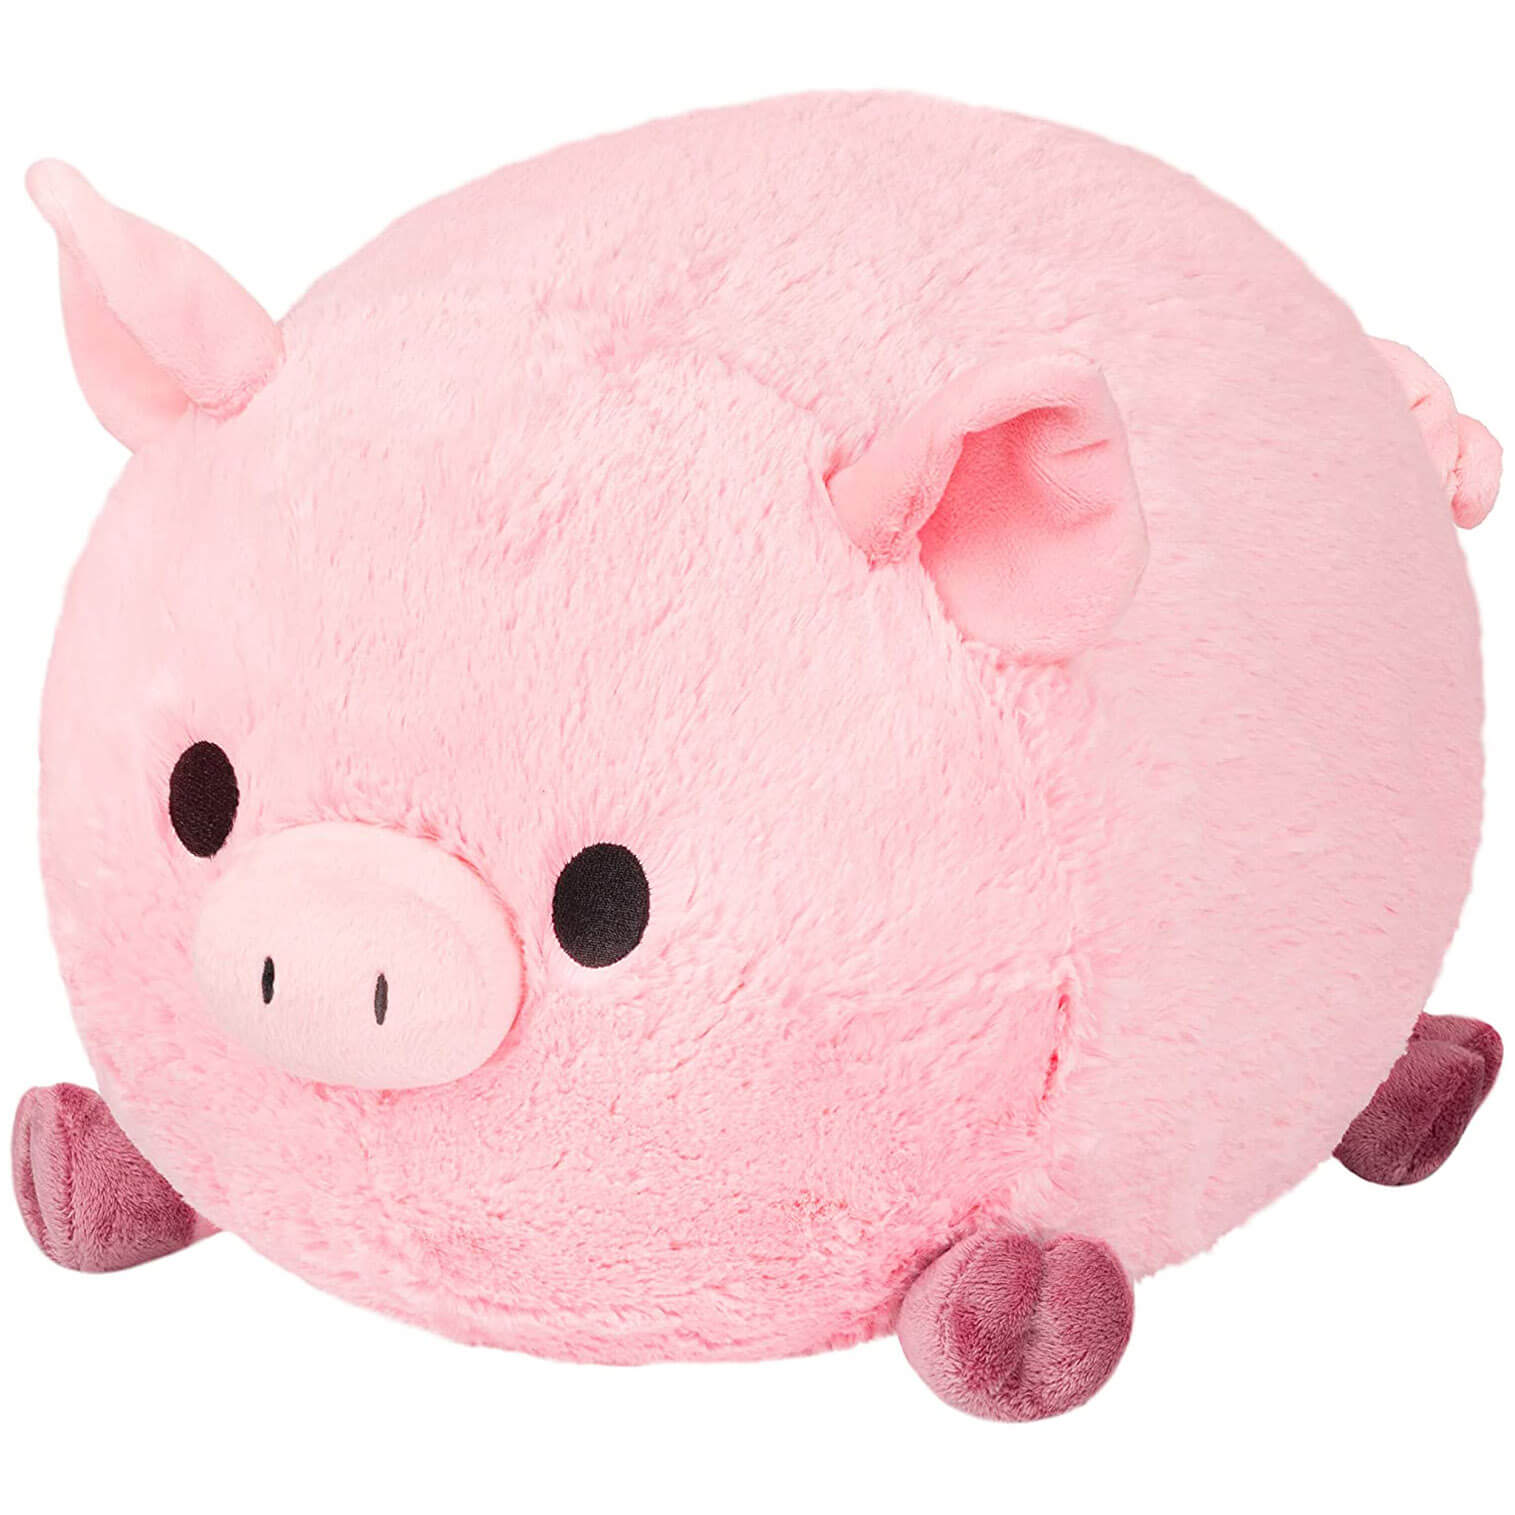 Squishable Piggy Plush